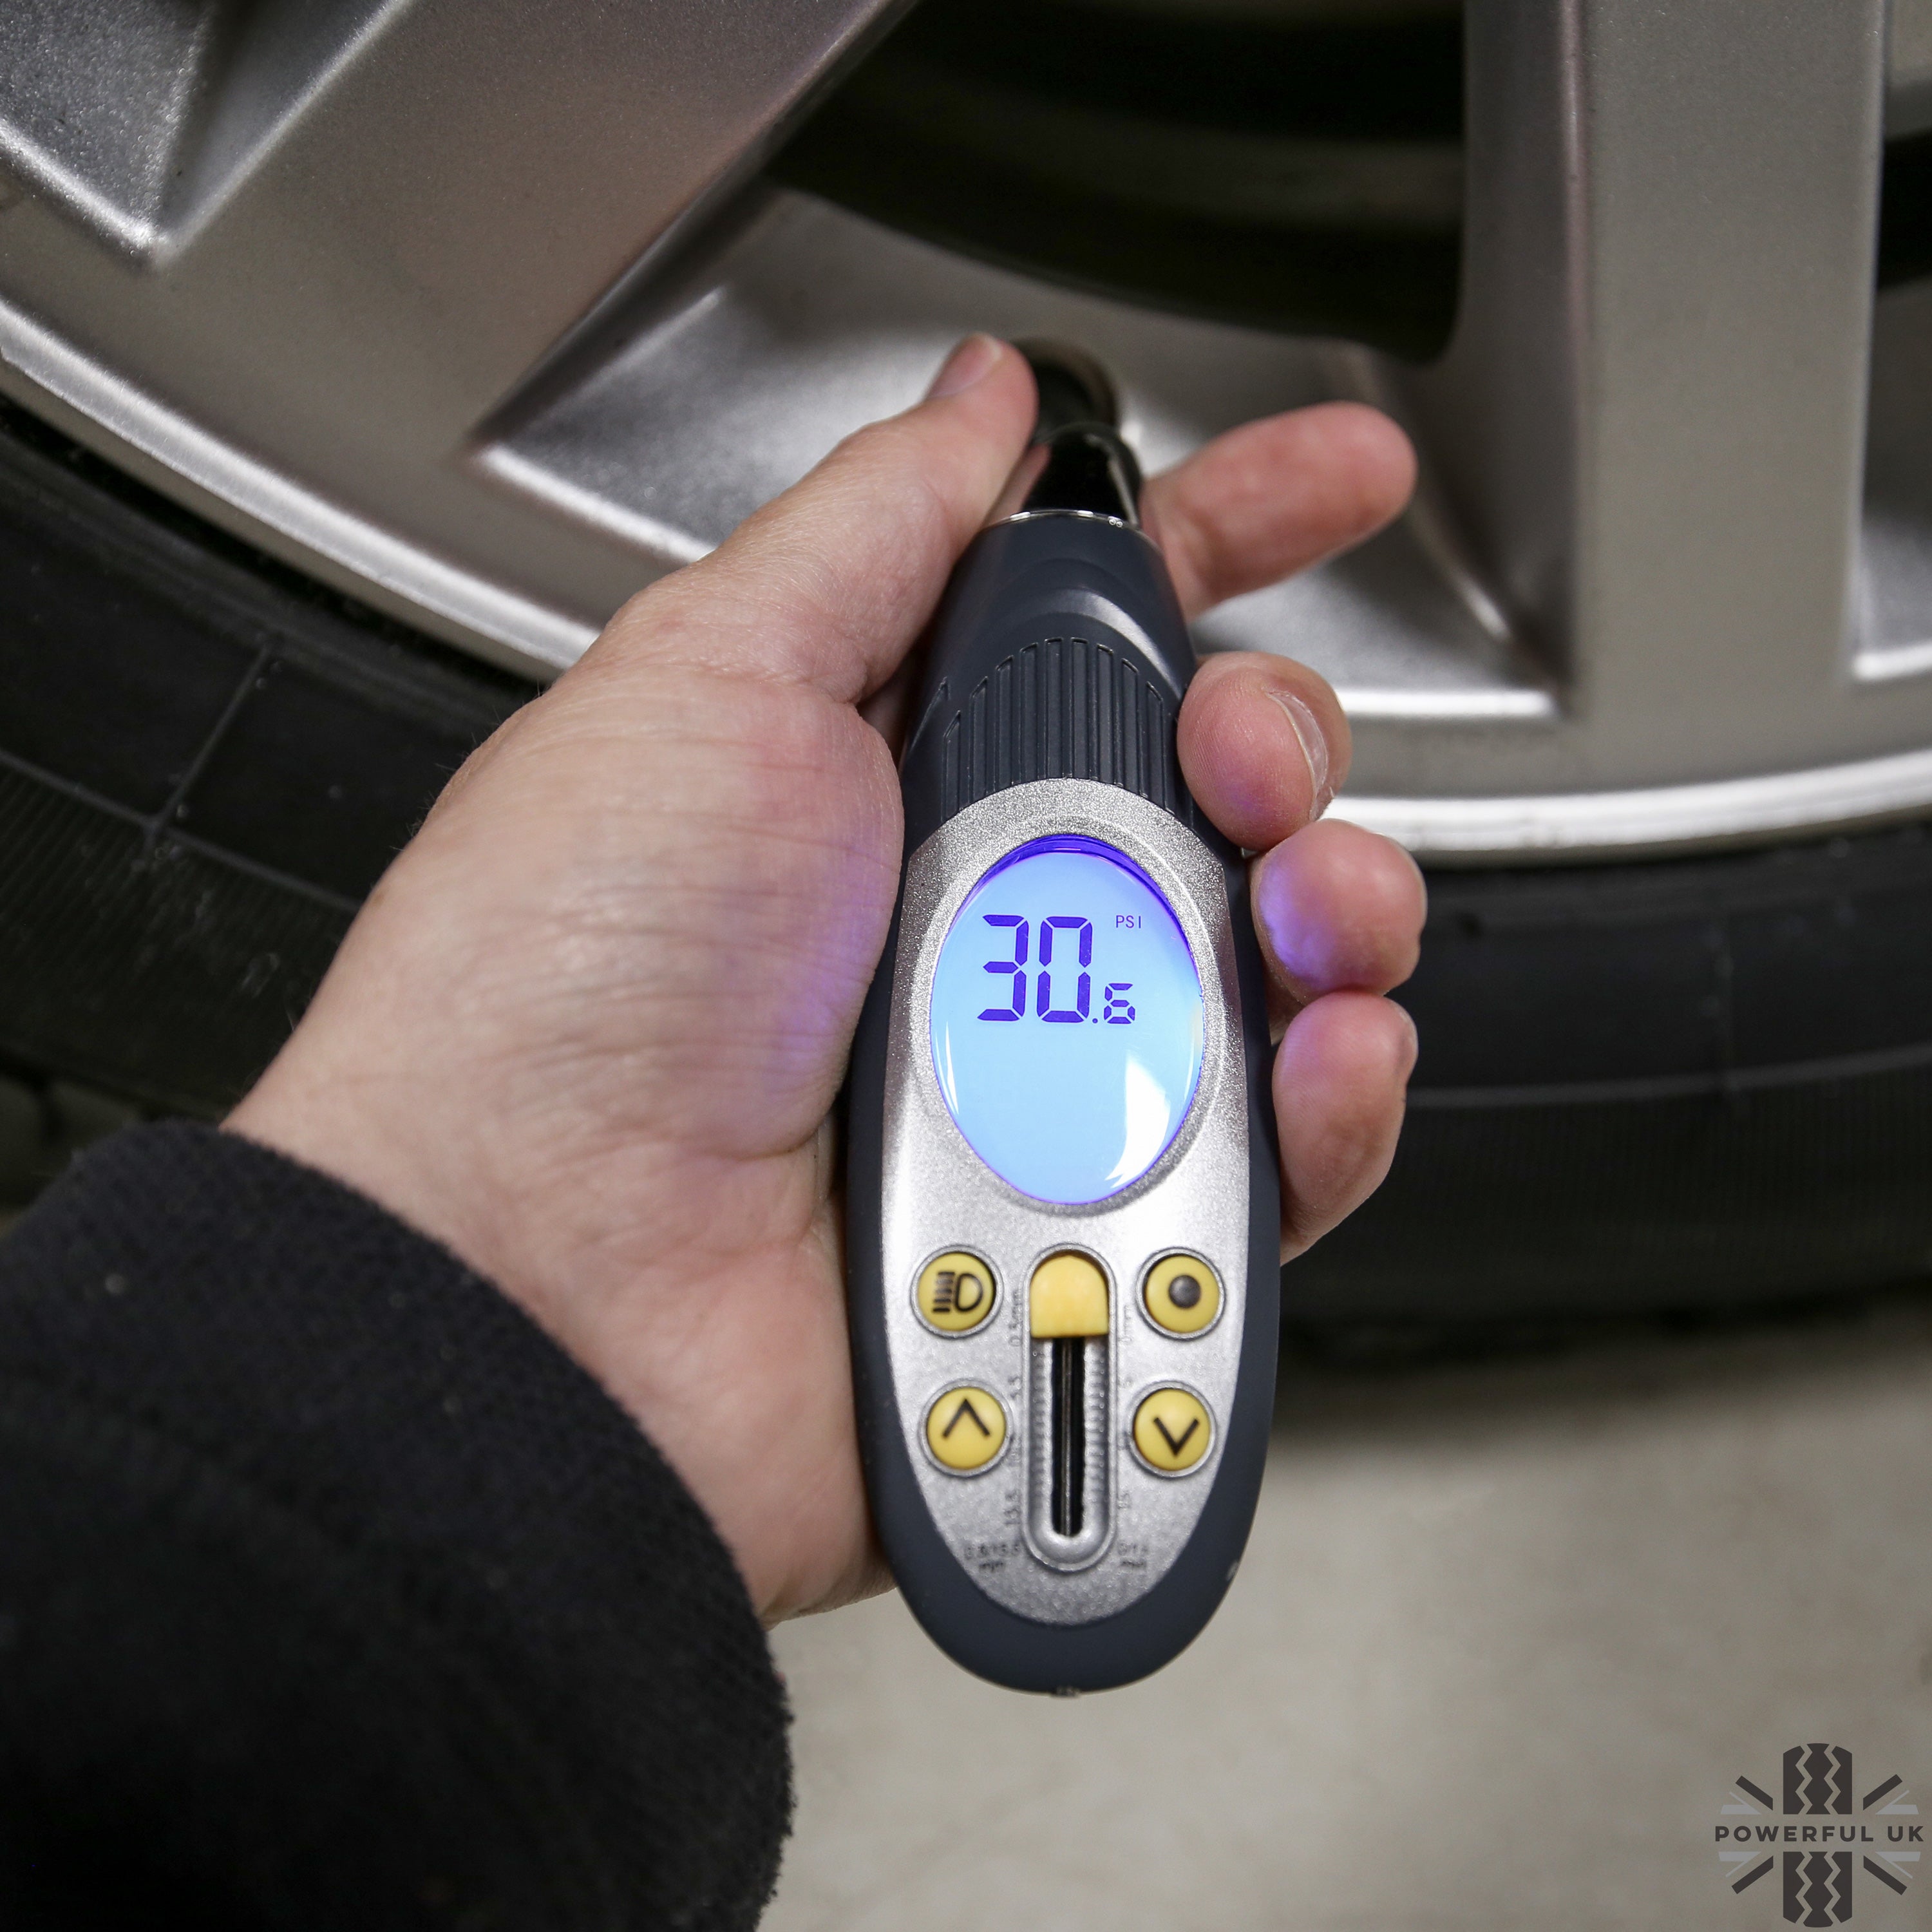 Genuine Land Rover Digital Tyre Pressure Gauge – Powerful UK